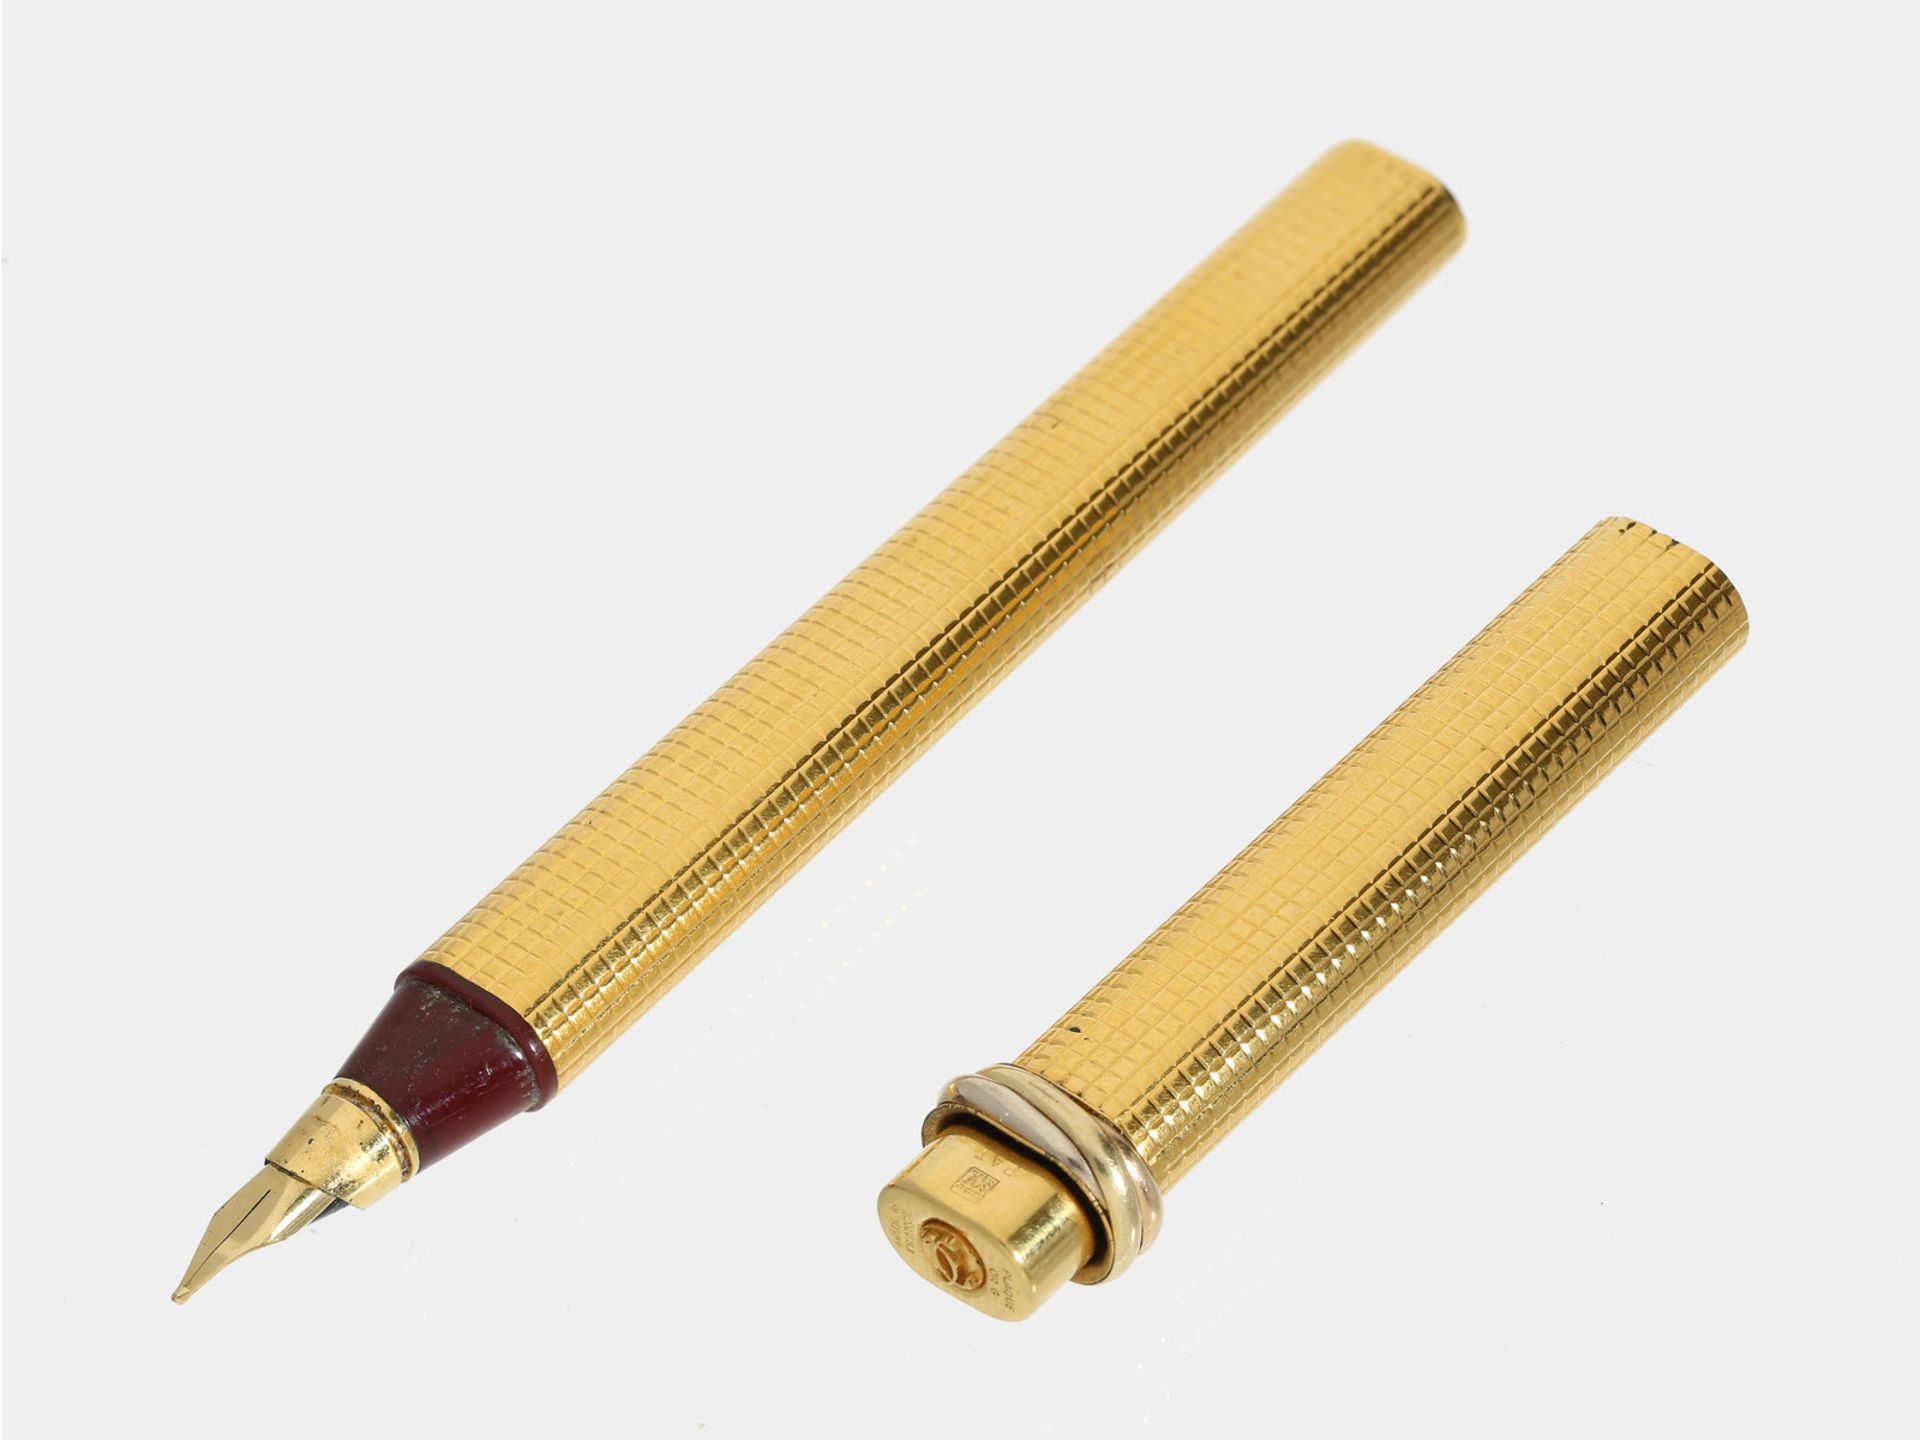 Schreibgerät: edler Füller/Federhalter von CartierCa. 14cm lang, vergoldet, schönes Design,